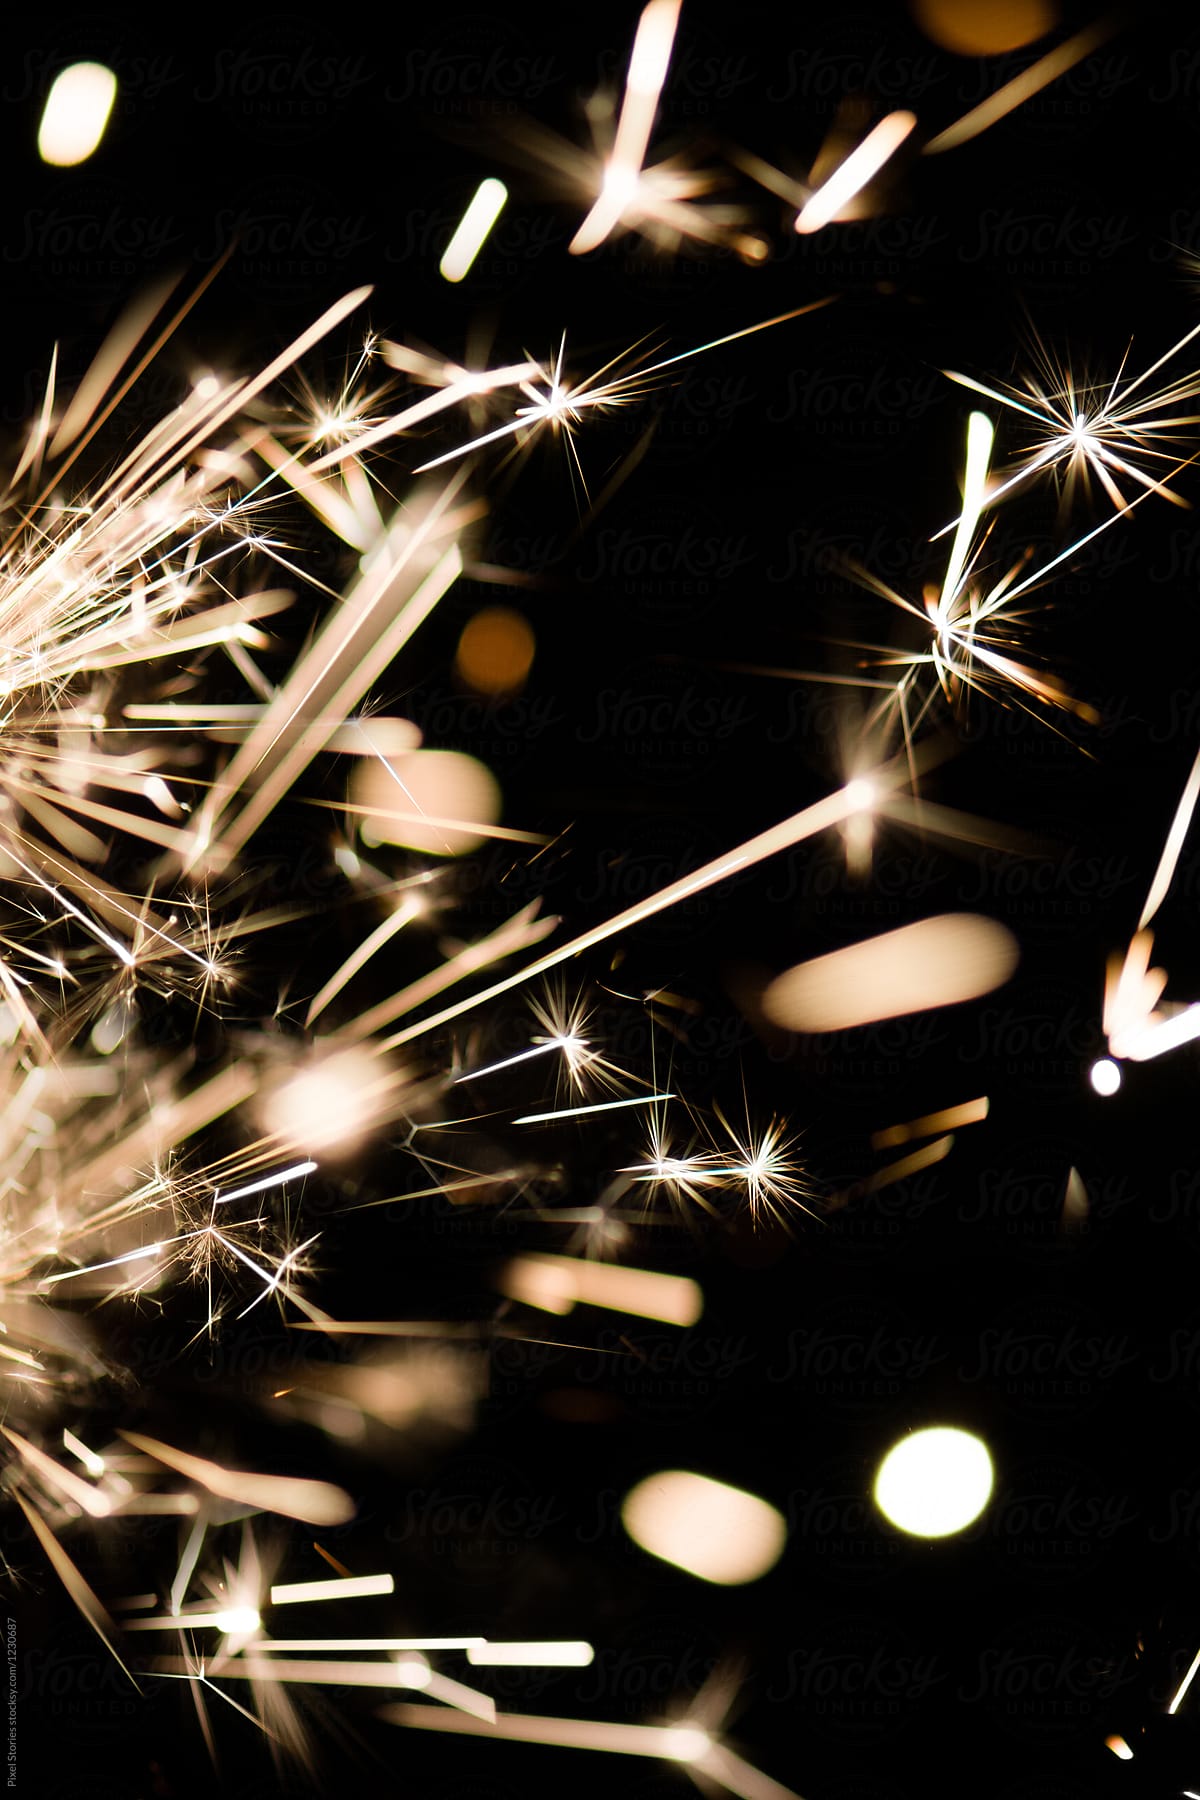 Festive sparkler sparks close-up